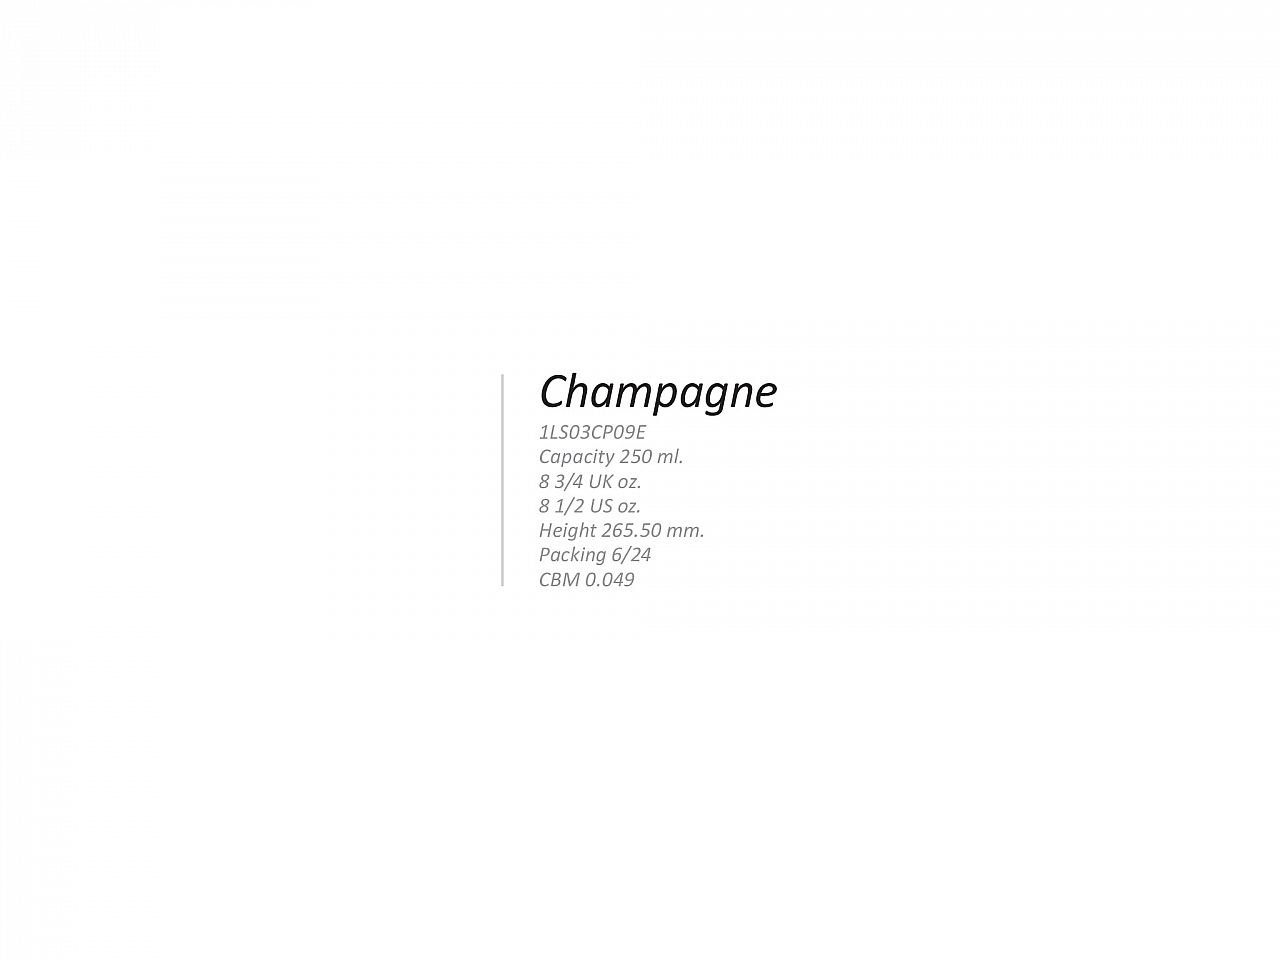 Flute Champagne Shanghai Soul - v2